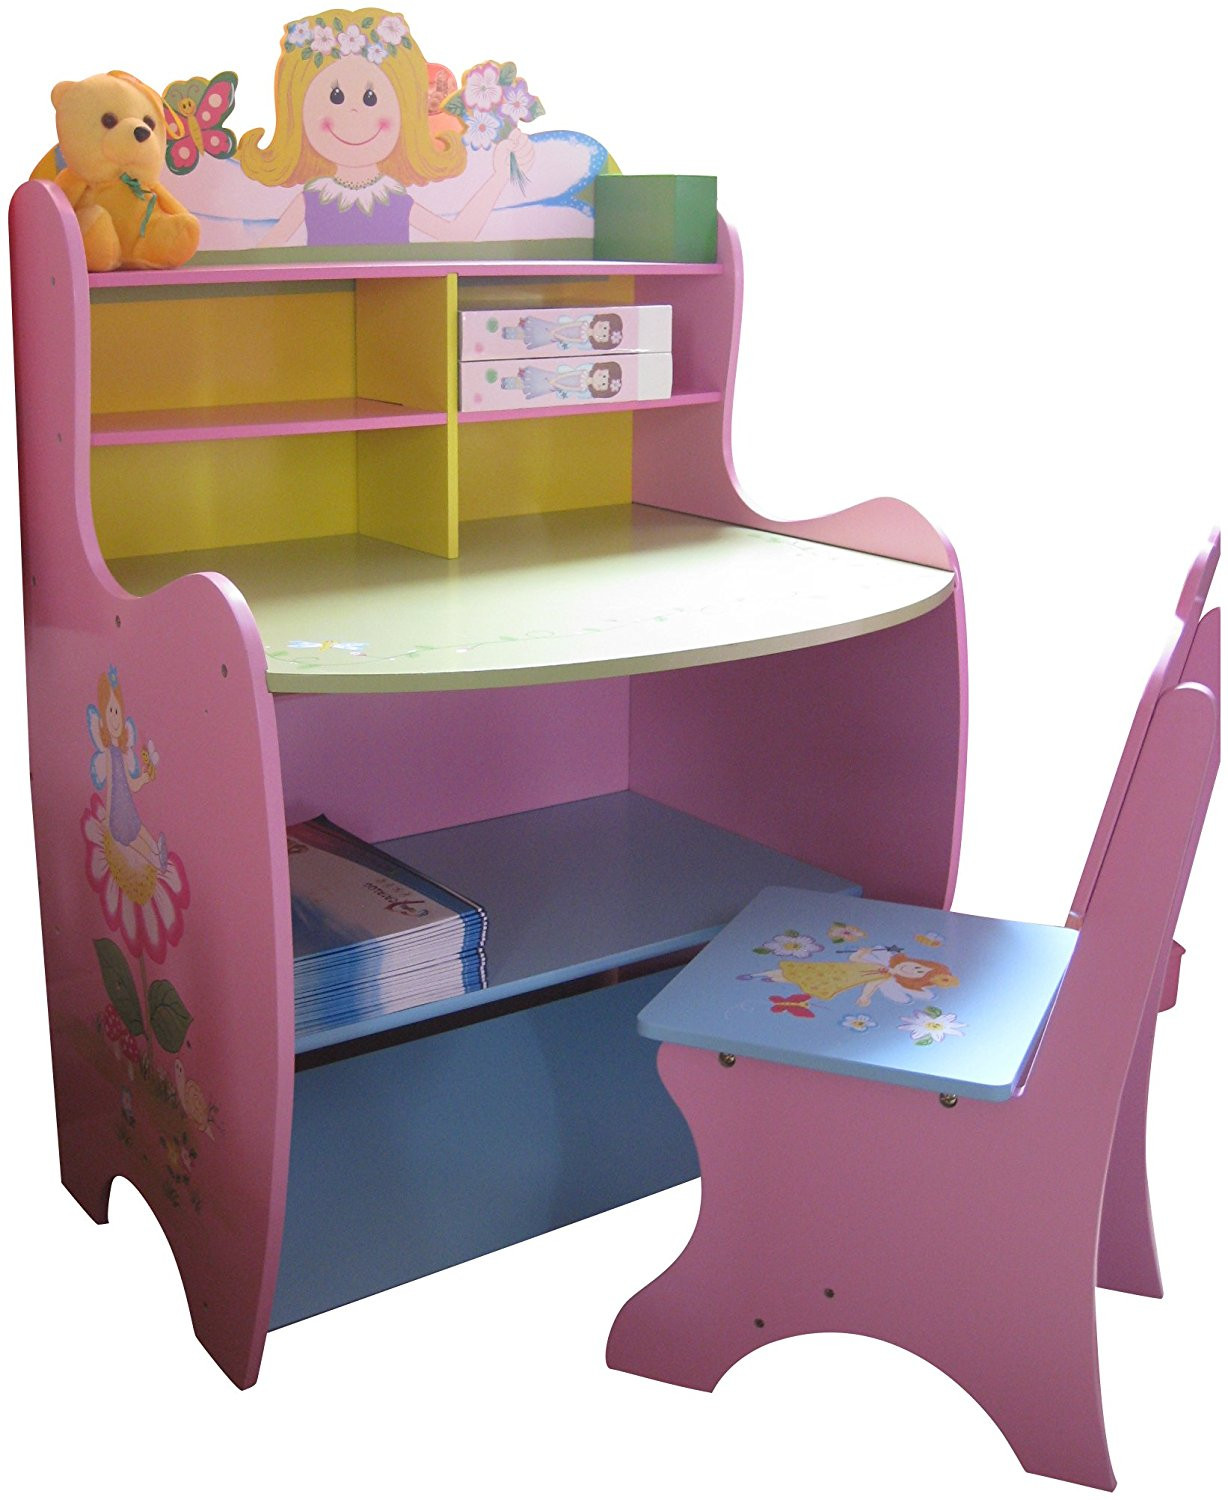 Children Desk With Storage
 Childrens Desk Chair Wooden Writing Storage Fairy Bedroom